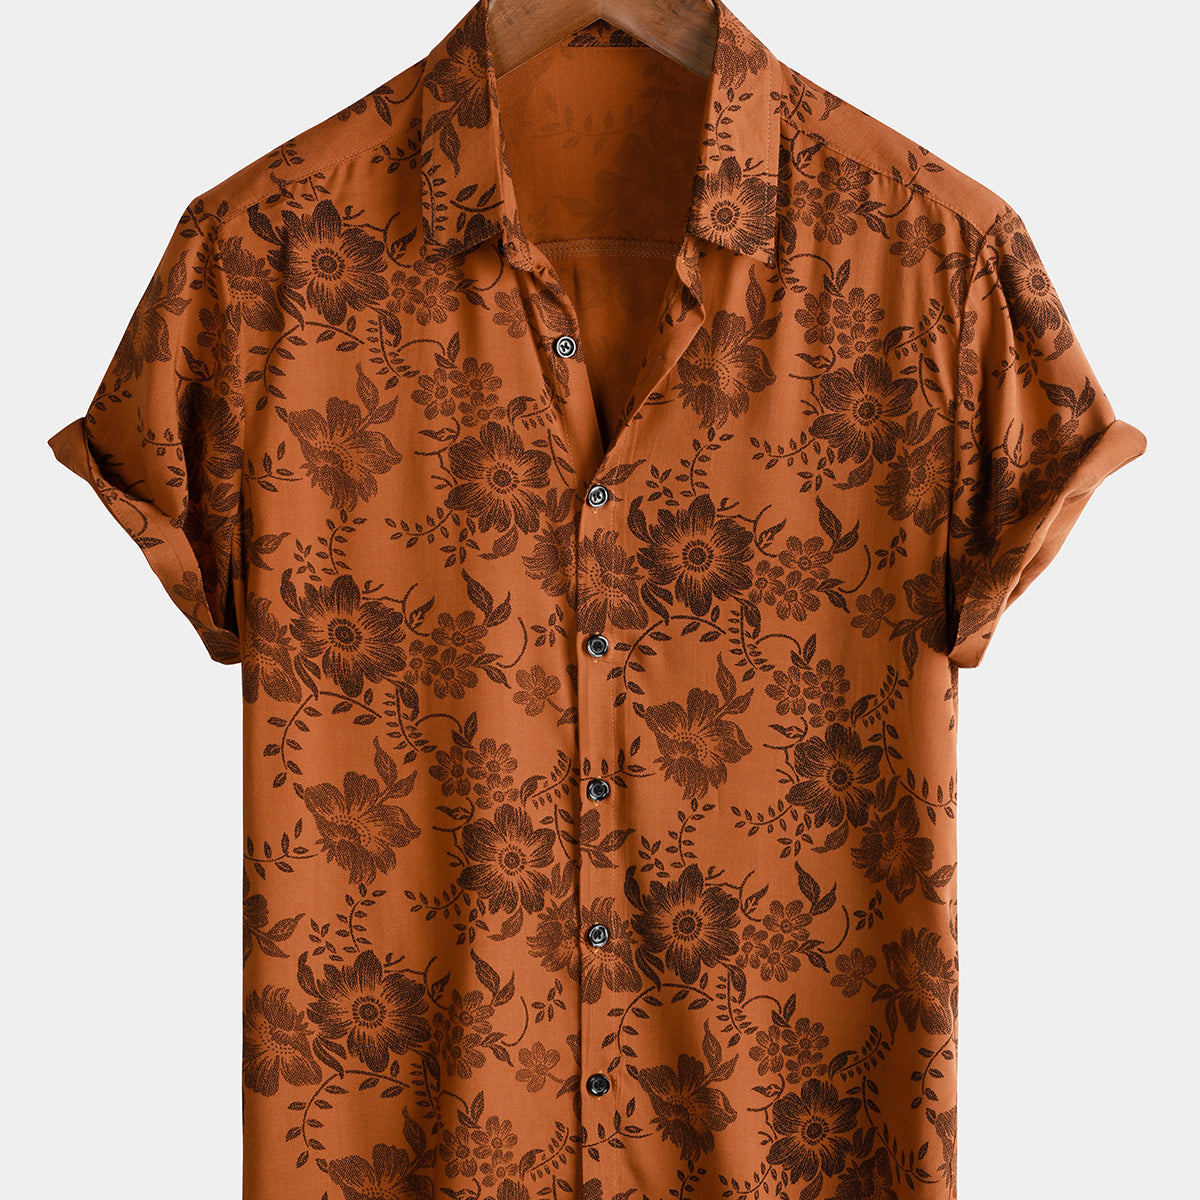 Camisa con botones de manga corta transpirable para vacaciones con flores vintage y estampado floral marrón para hombre